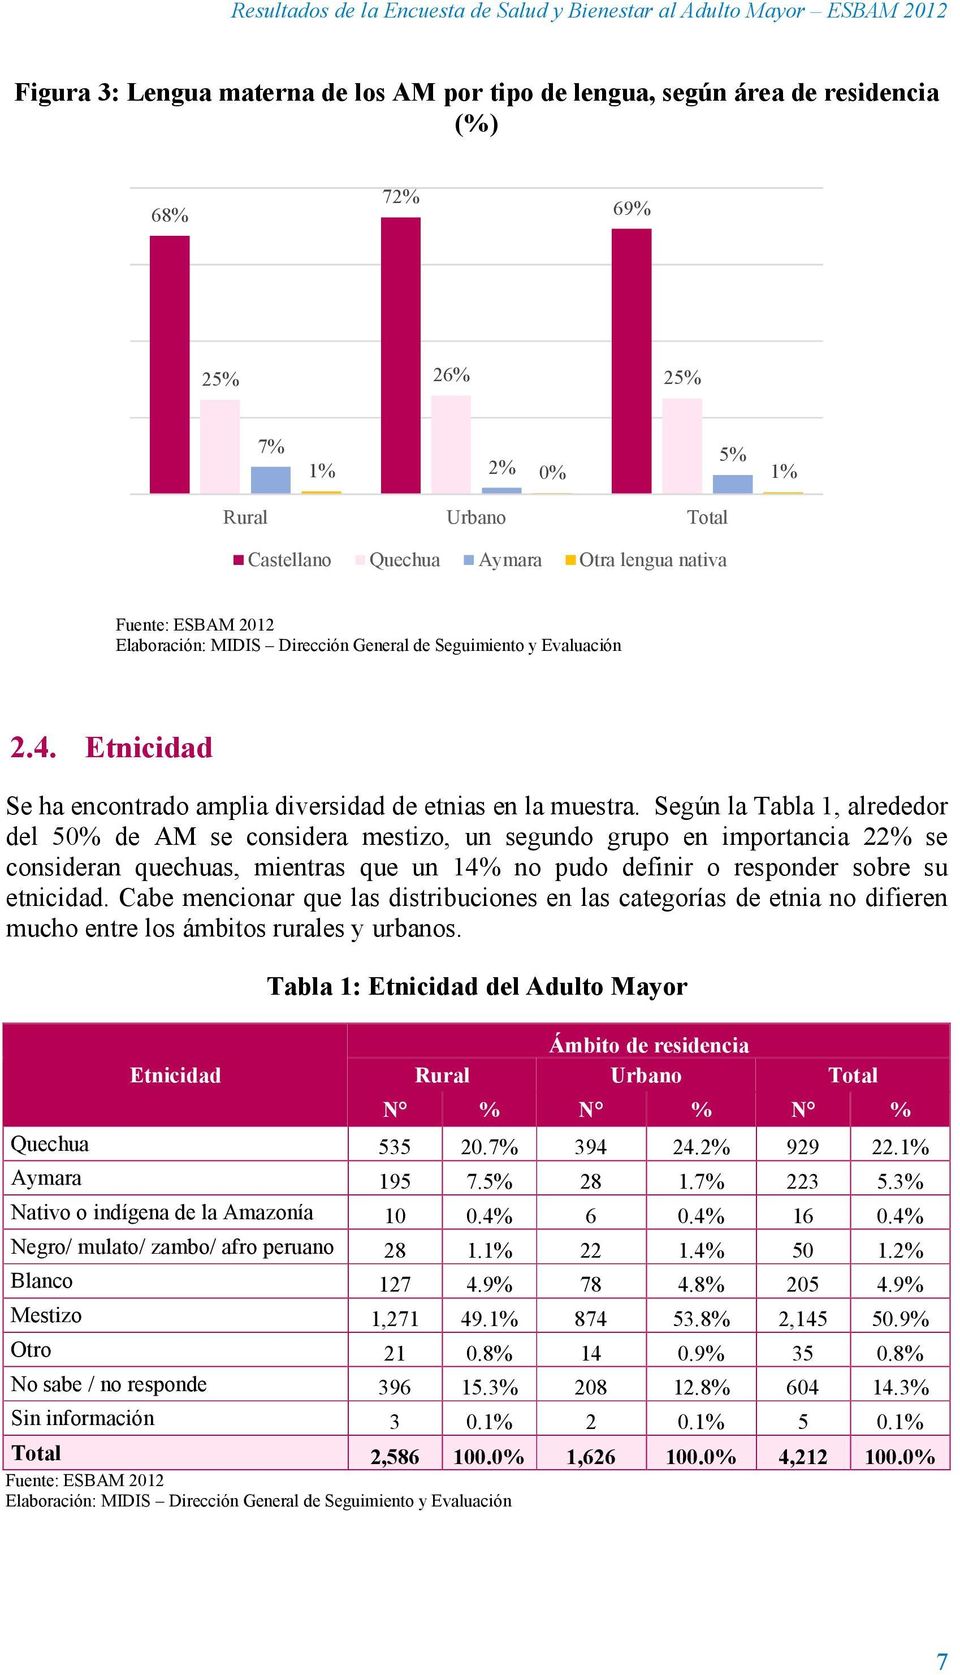 Según la Tabla 1, alrededor del 50% de AM se considera mestizo, un segundo grupo en importancia 22% se consideran quechuas, mientras que un 14% no pudo definir o responder sobre su etnicidad.